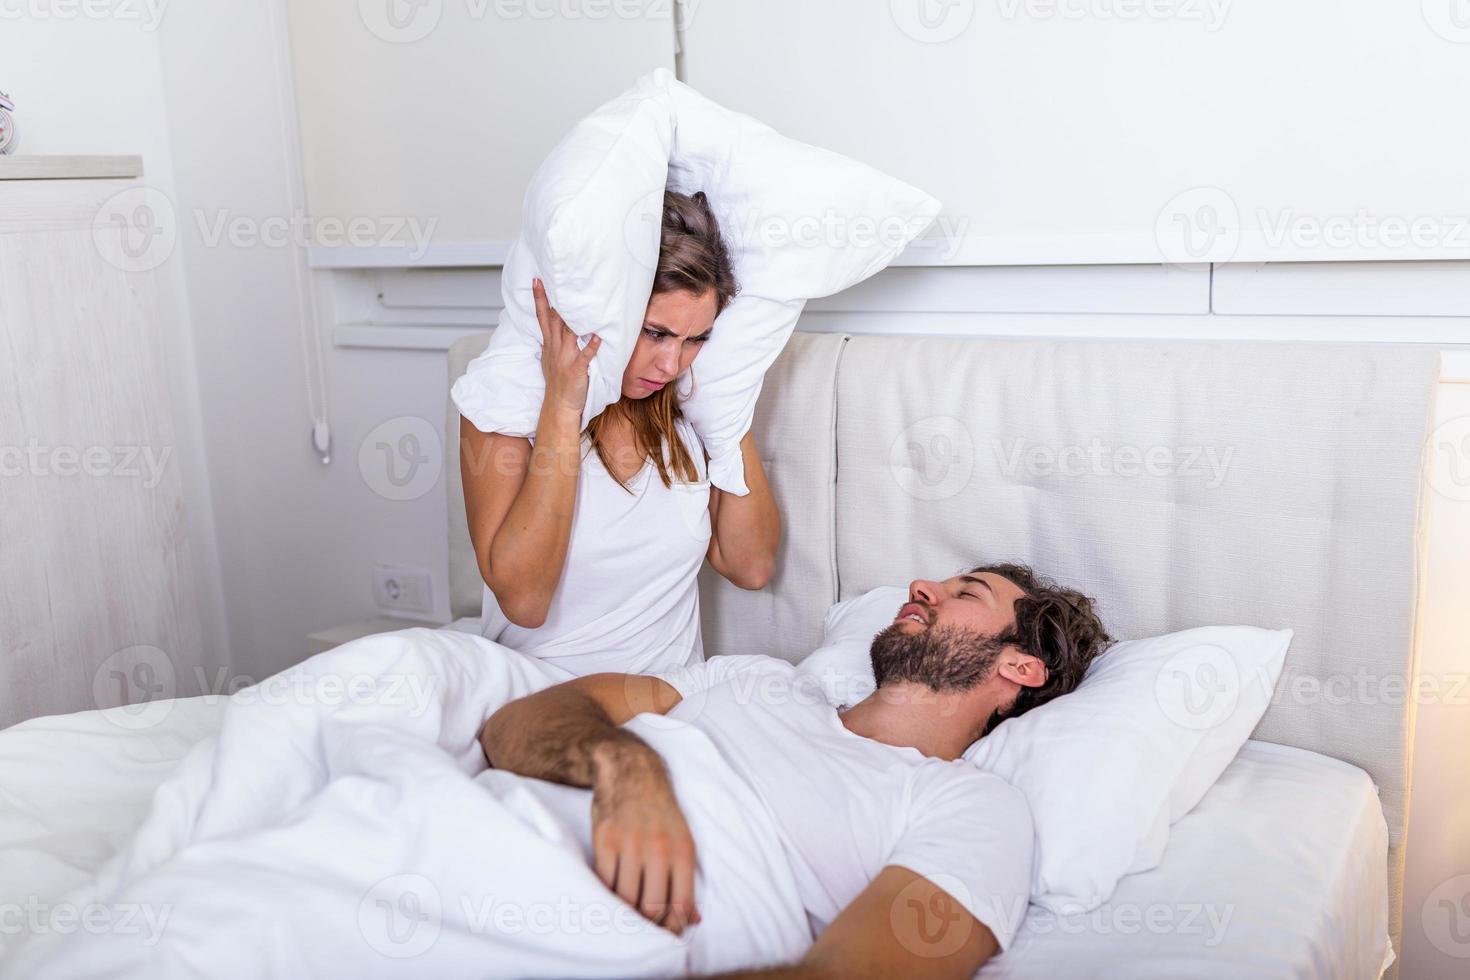 jovem casal tem problema com o ronco do homem. casal heterossexual na cama, homem dormindo e roncando com a boca aberta, enquanto uma mulher cansada irritada por roncar sentada na cama com um travesseiro na cabeça. foto